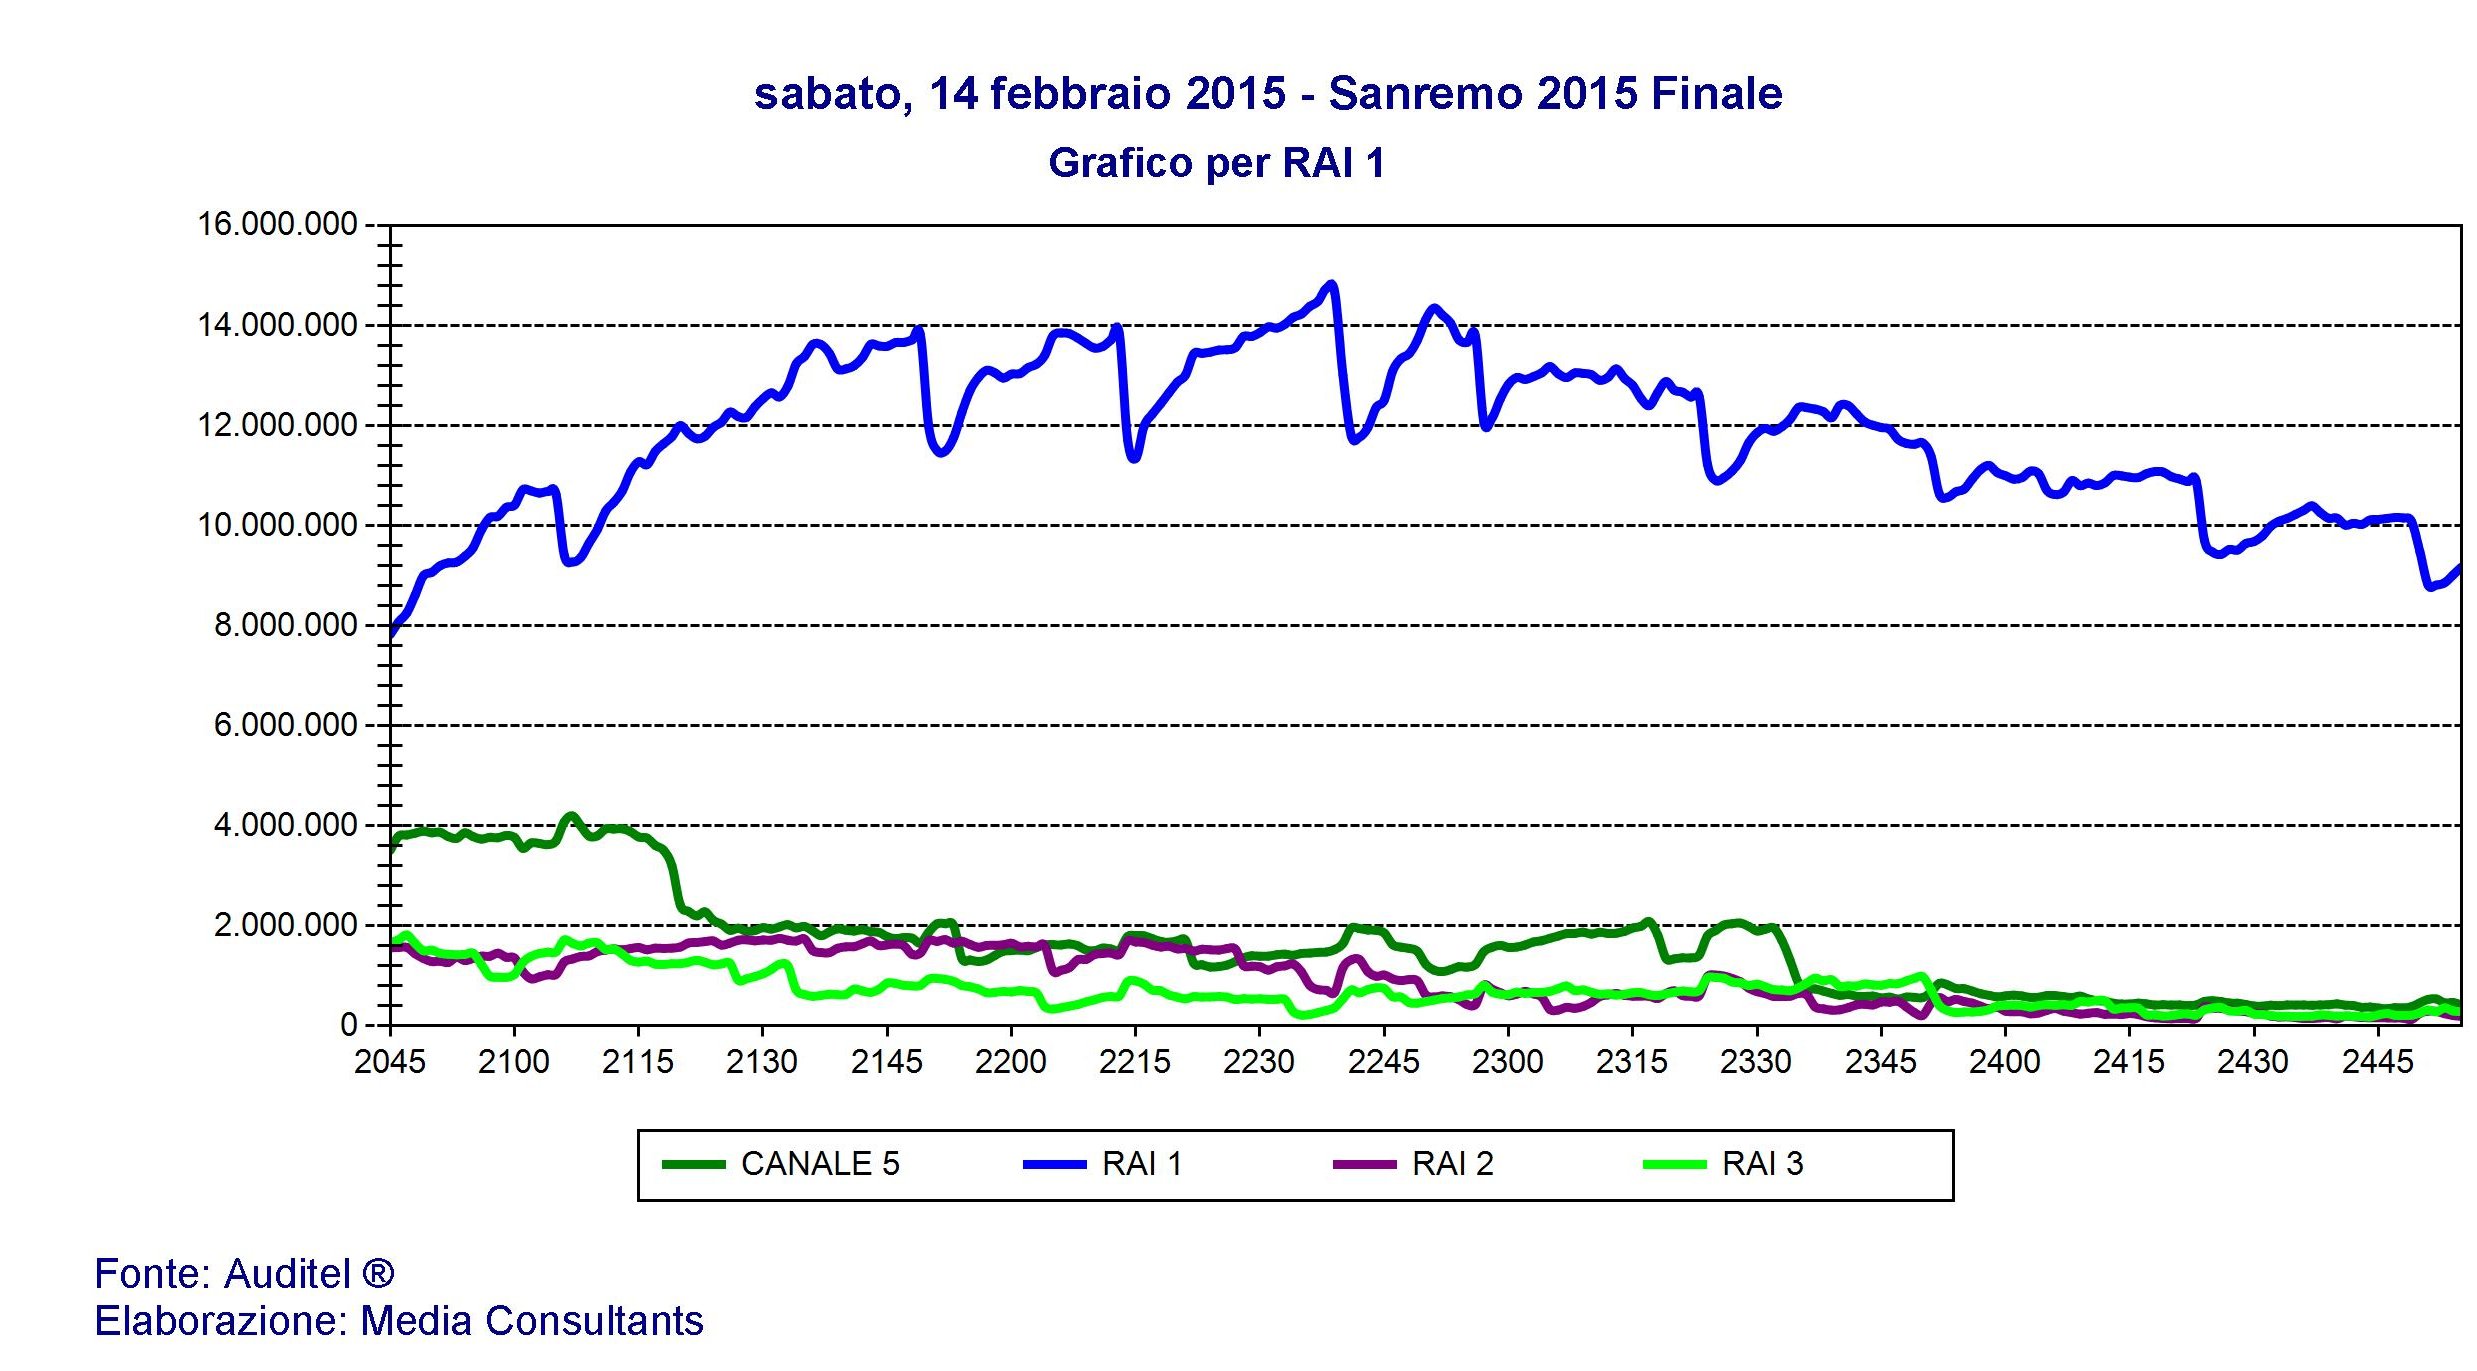 Sanremo, la finale vola a 11,8 mln e 54%, la più alta degli ultimi 10 anni